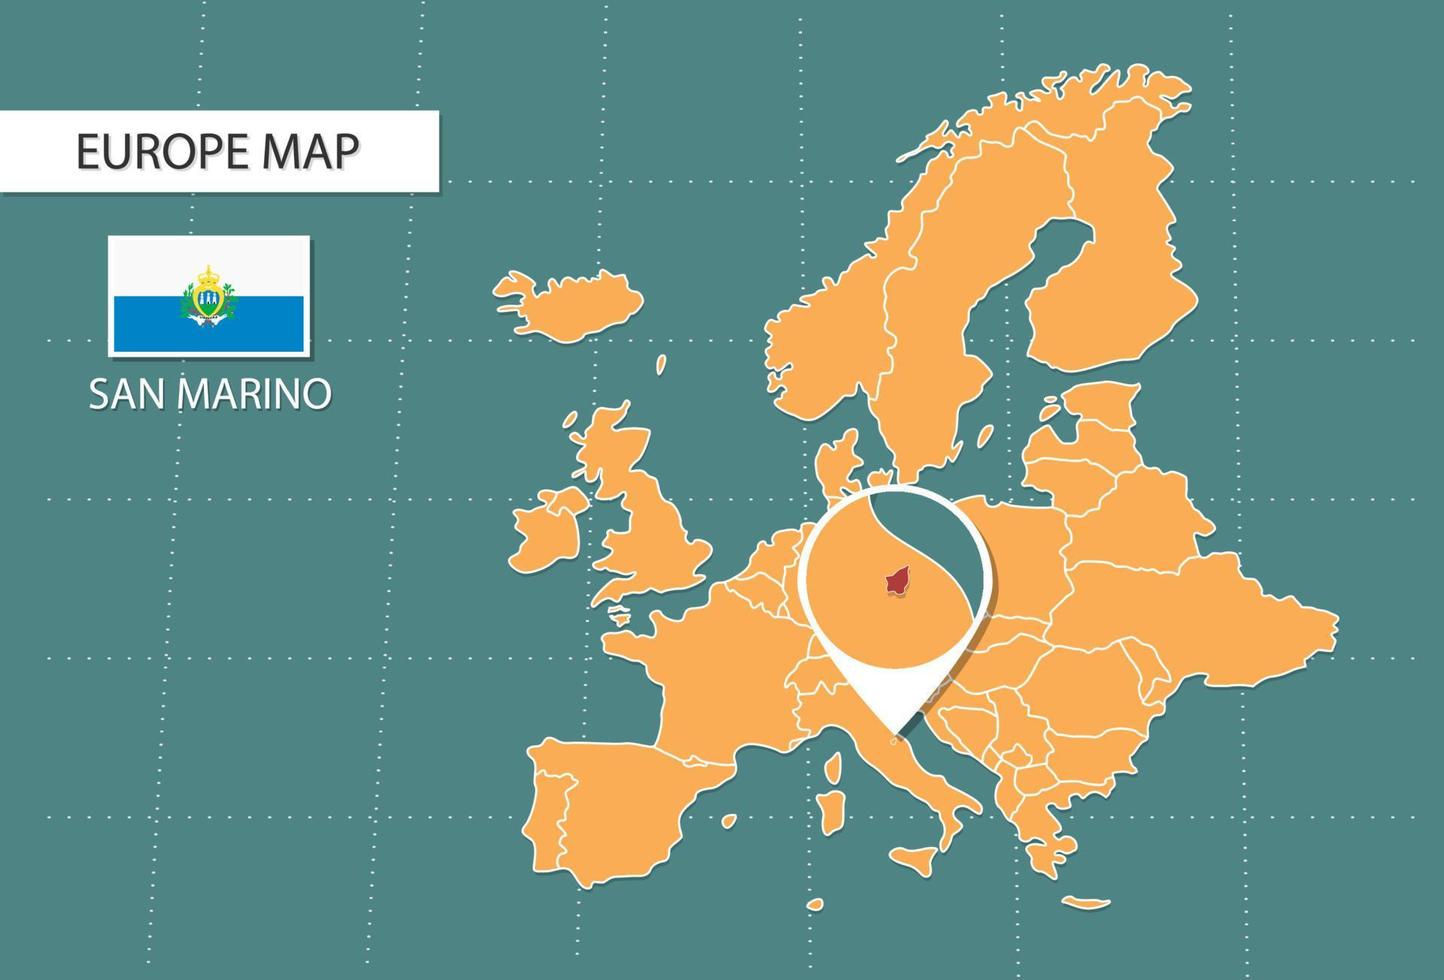 san marino Karta i Europa zoom version, ikoner som visar san marino plats och flaggor. vektor